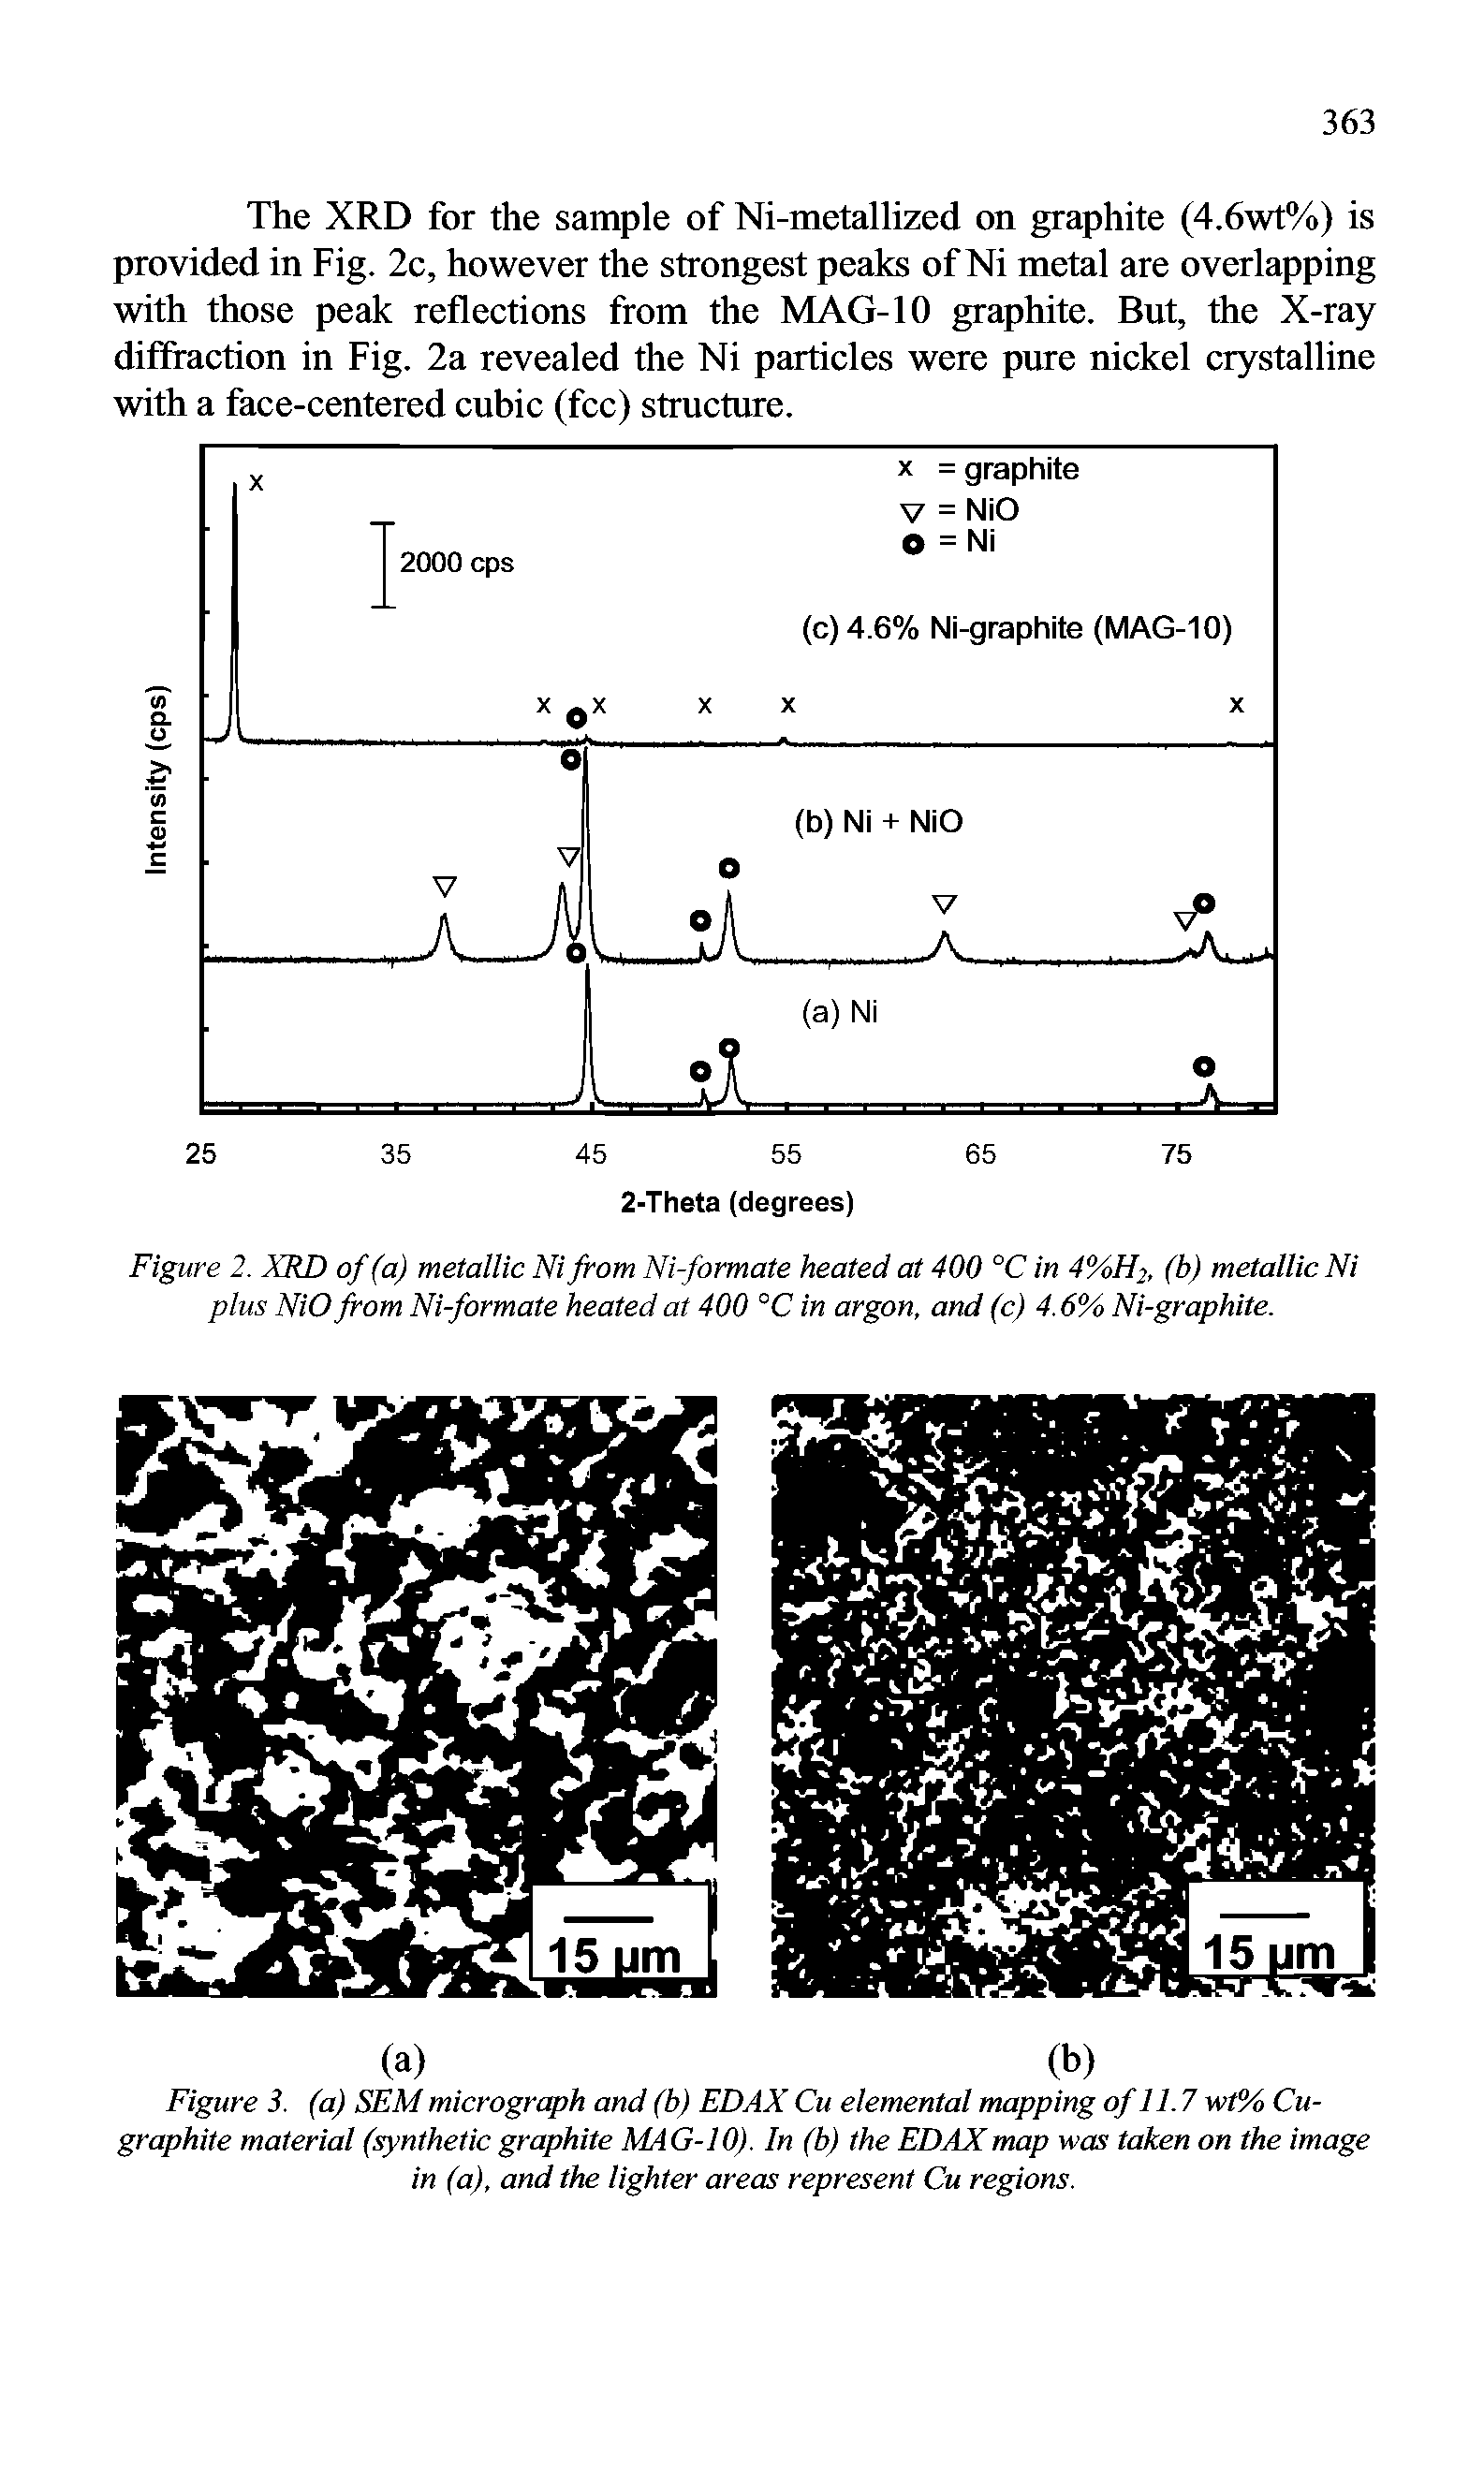 Figure 2. XRD of (a) metallic Ni from Ni-formate heated at 400 °C in 4%H2, (b) metallic Ni plus NiO from Ni-formate heated at 400 °C in argon, and (c) 4.6% Ni-graphite.